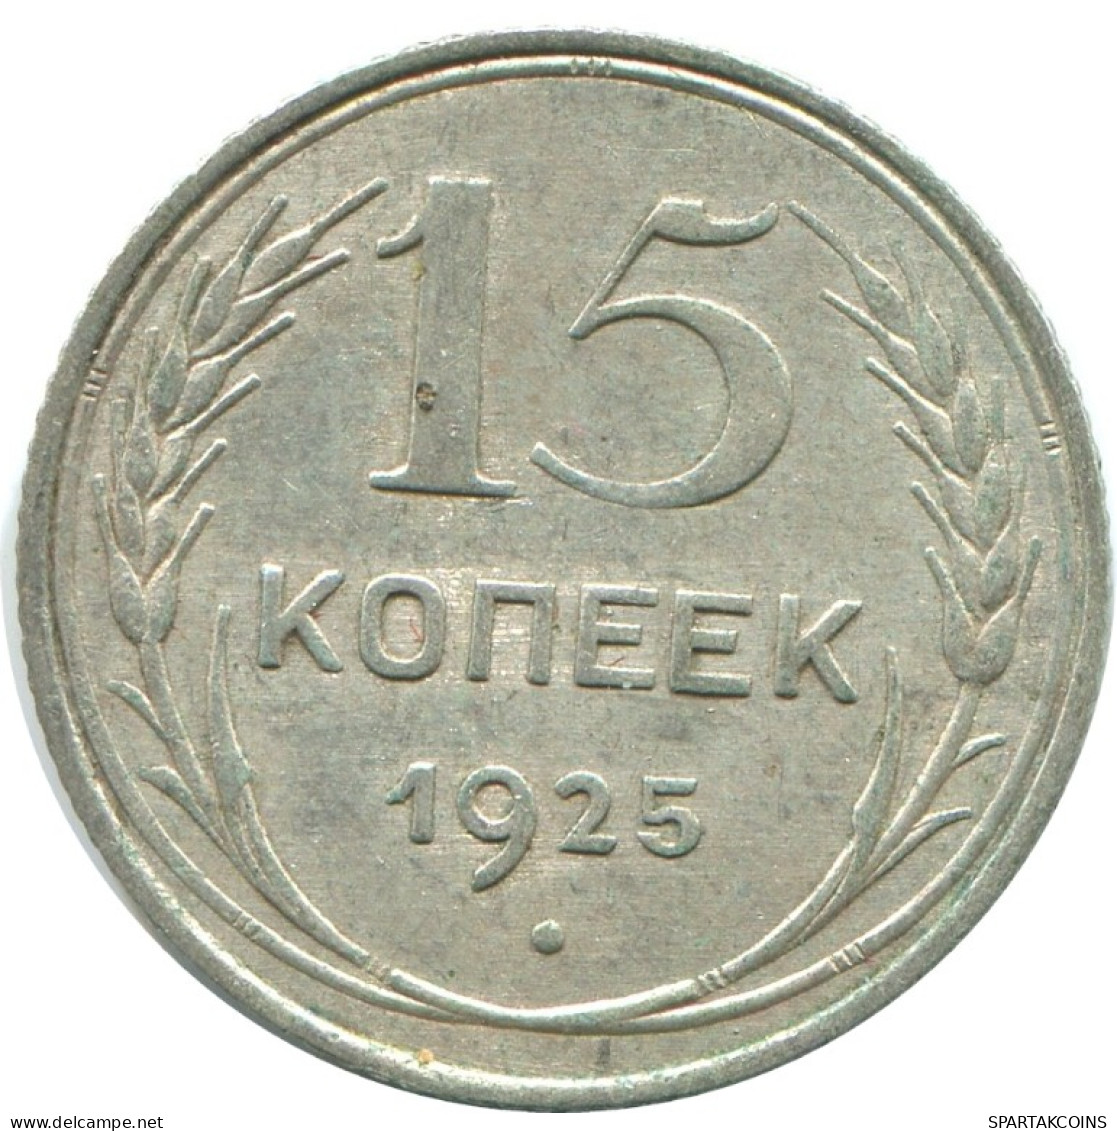 15 KOPEKS 1925 RUSSLAND RUSSIA USSR SILBER Münze HIGH GRADE #AF263.4.D.A - Russland